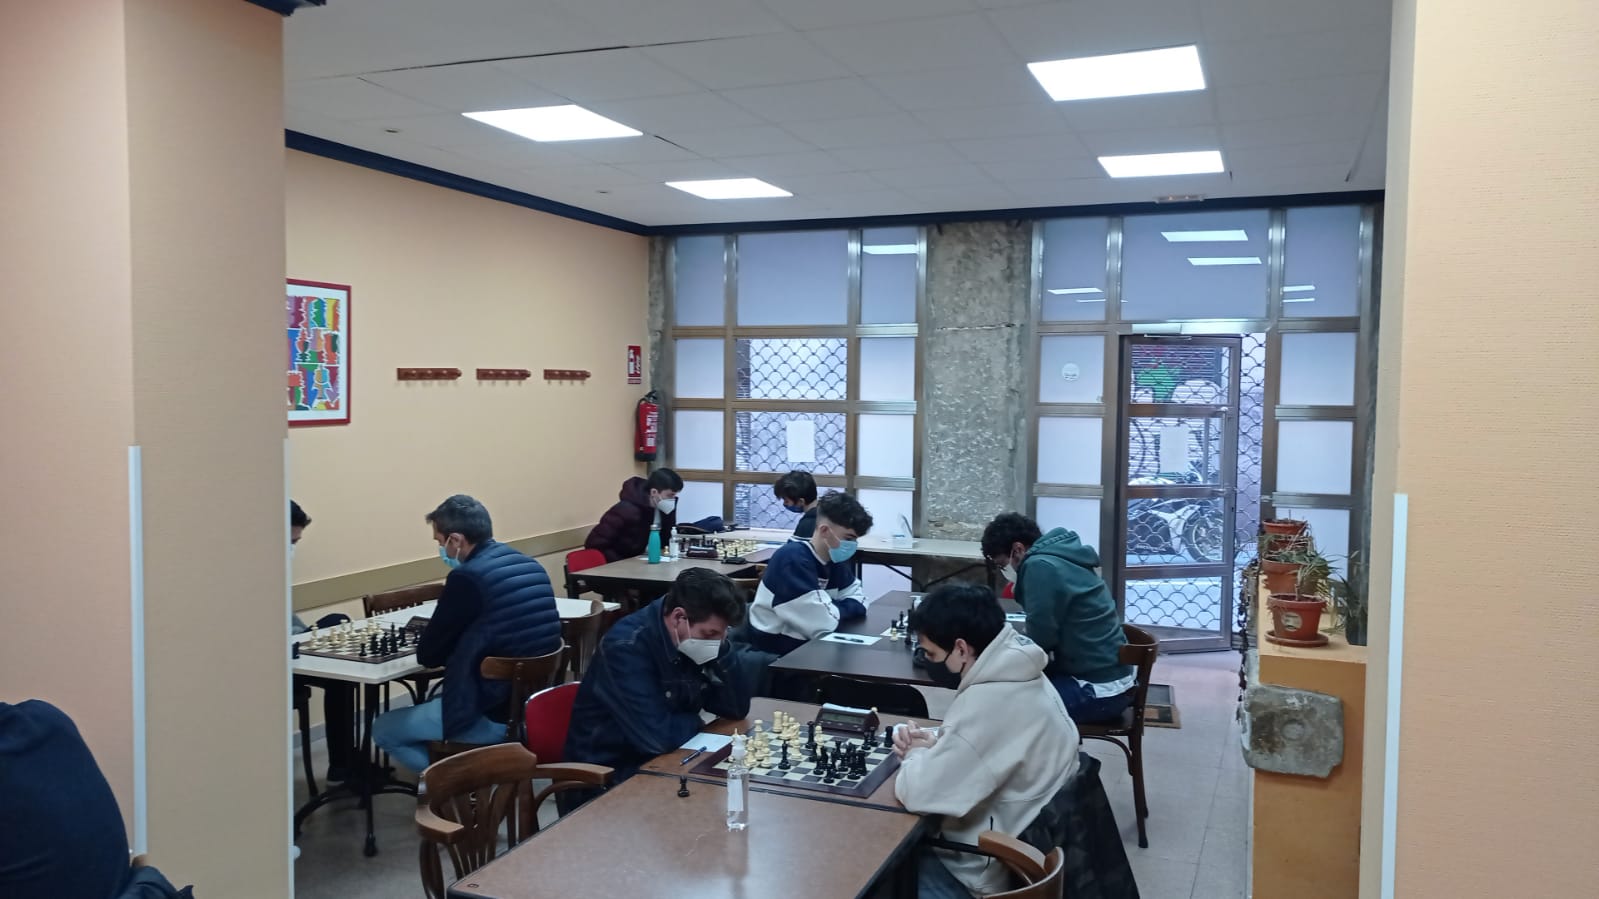 Sociedad deportiva y recreativa "La Didáctica" (club de ajedrez, go y dominó)